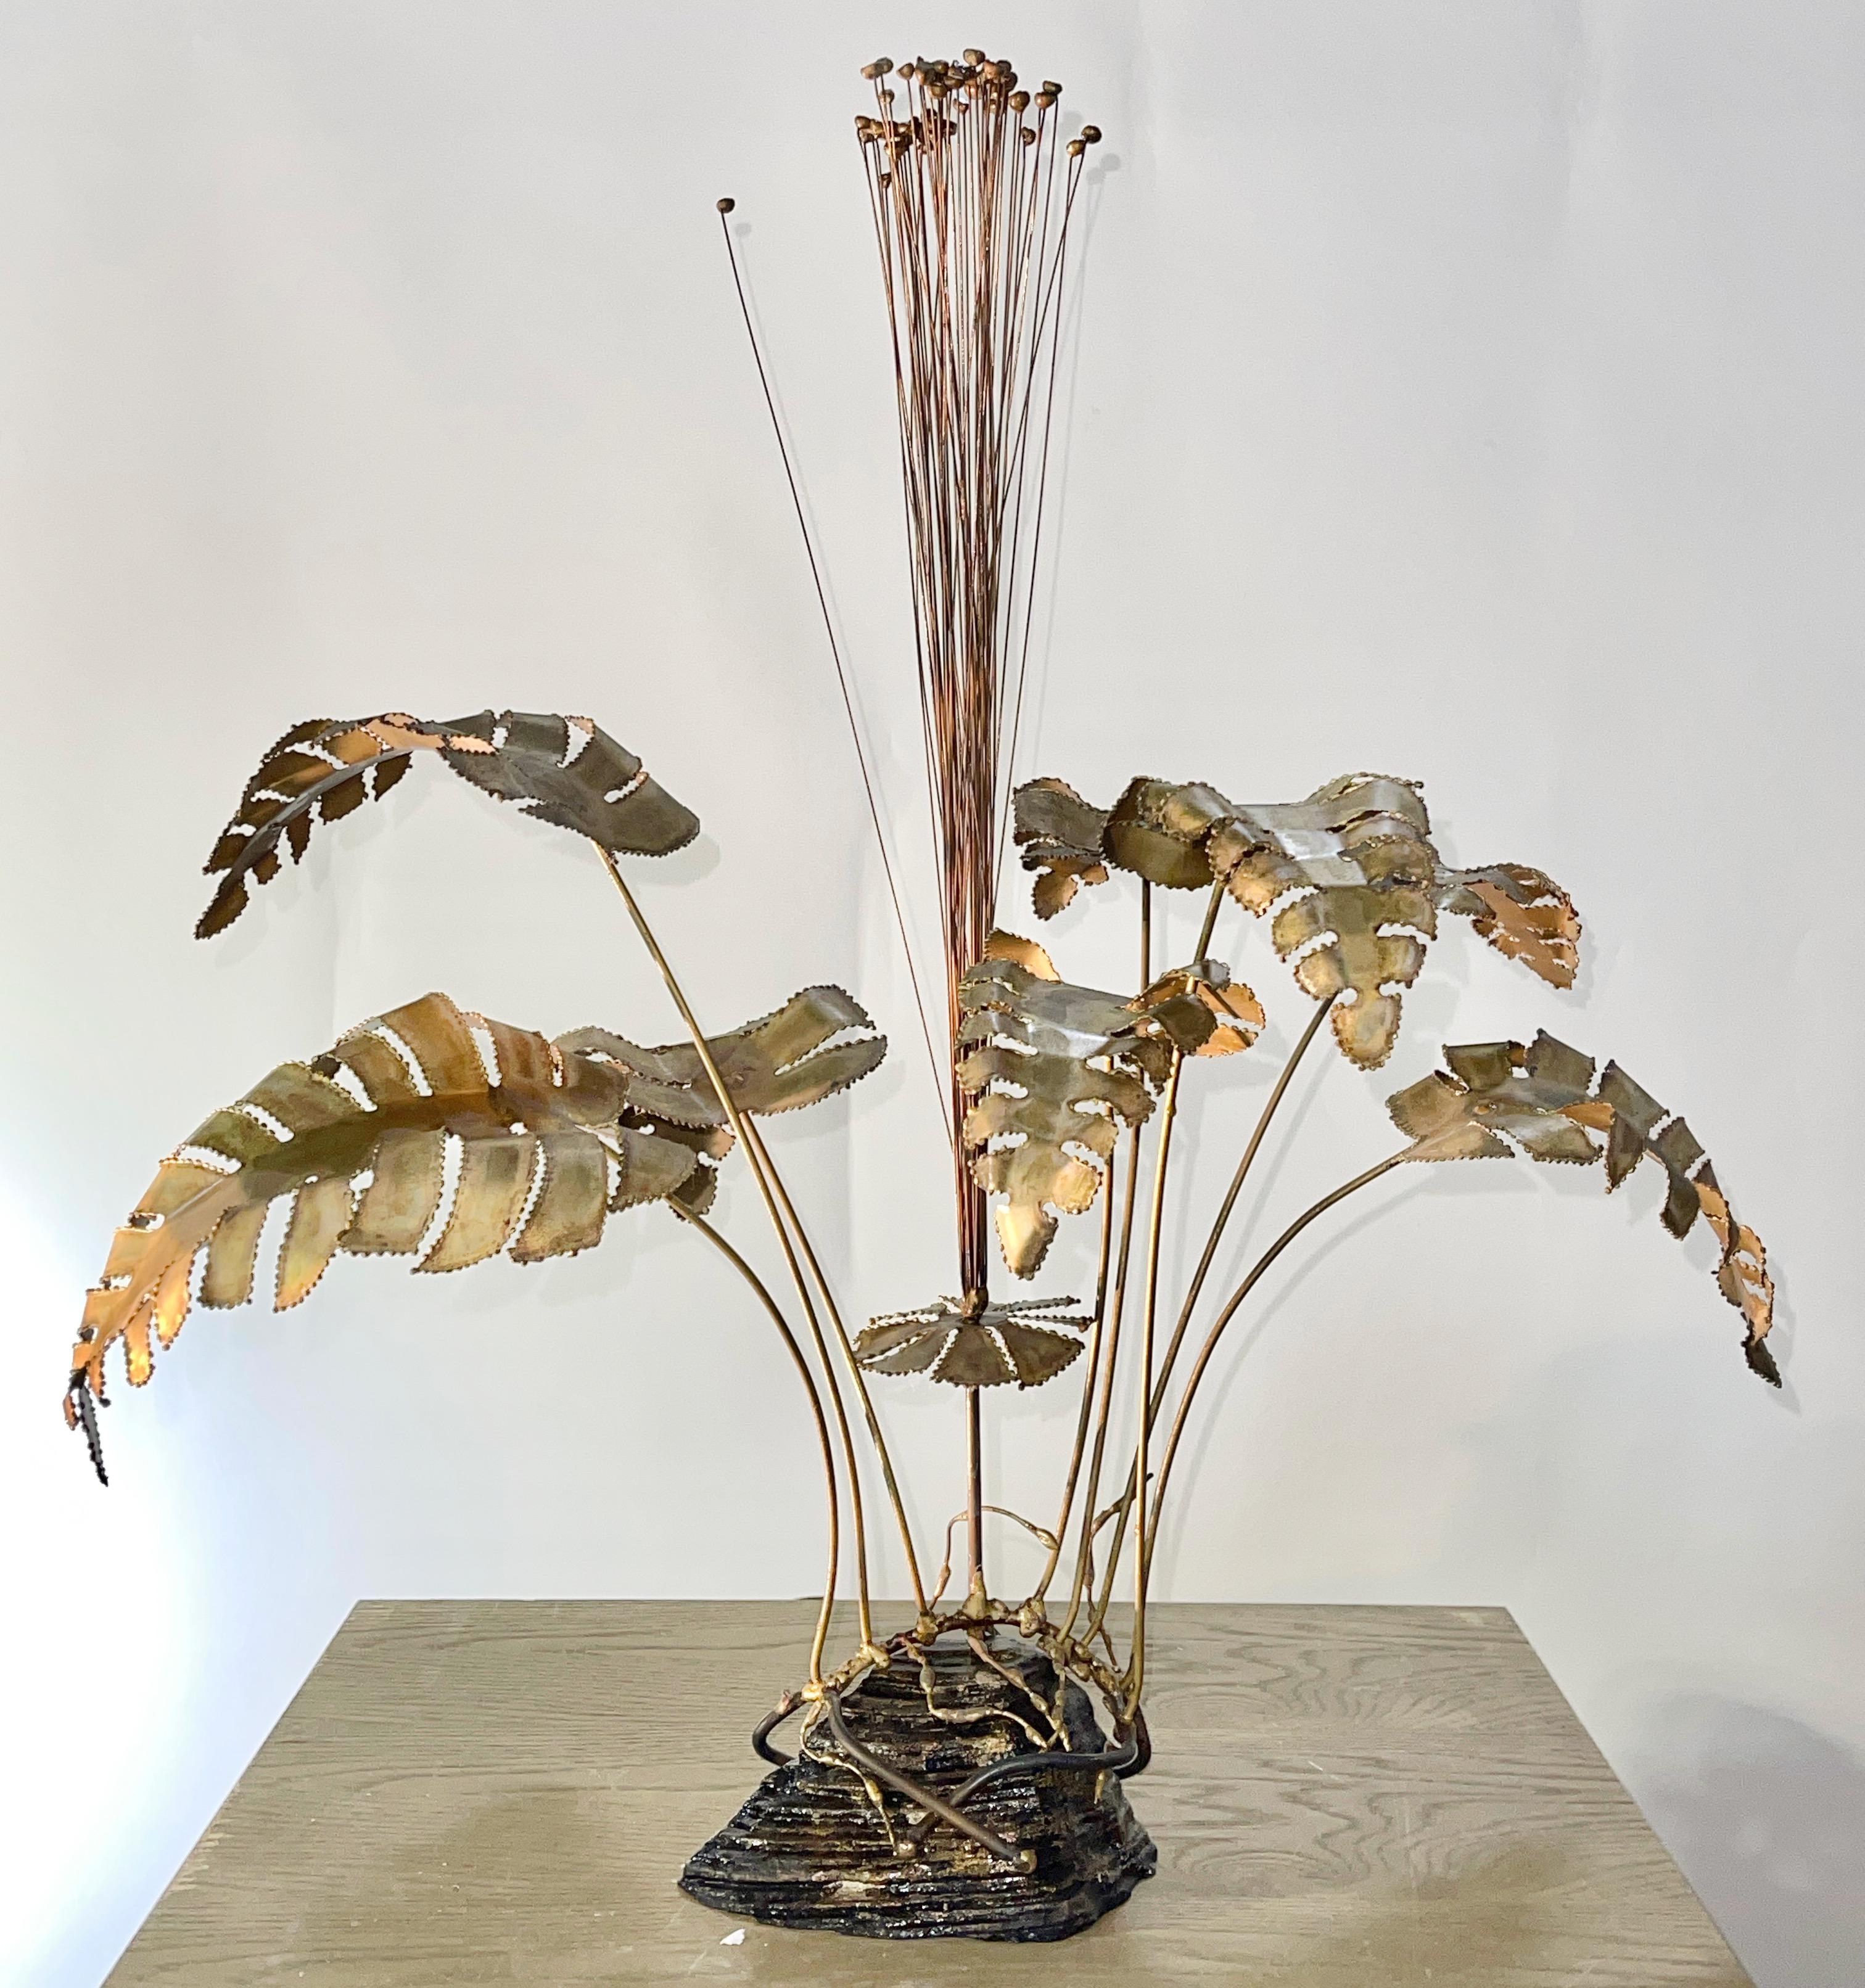 Fackelgeschnittenes kinetisches Blumenspray aus Messing und gemischtem Metall im Stil von Curtis Jere, vertrieben von Brotman's Village Fair in Sausalito, CA um 1970